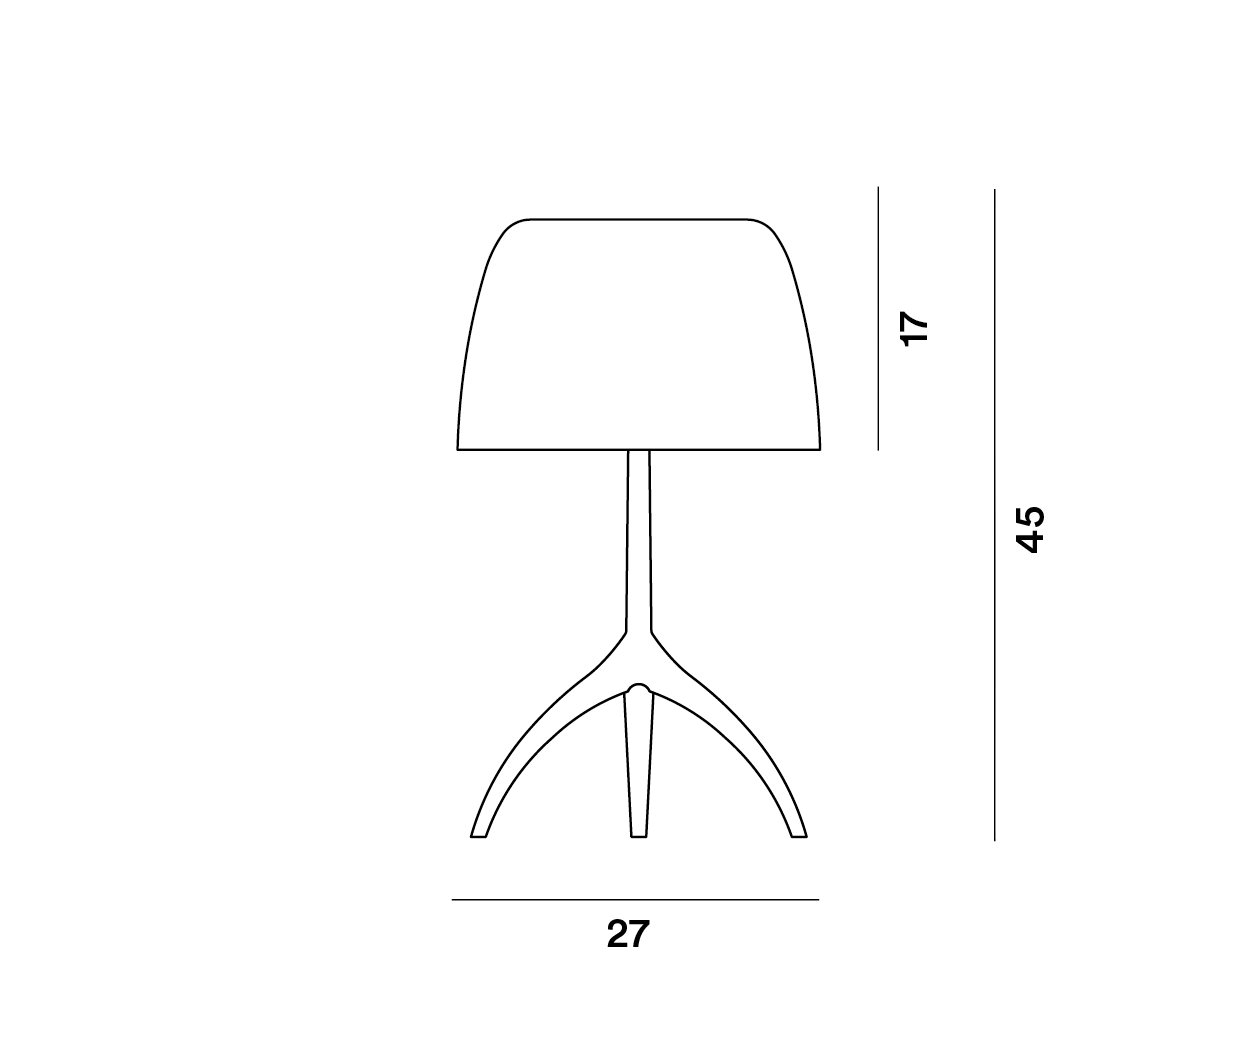 Lampada da tavolo Lumiere Nuances di Foscarini, dimensioni: diametro 27 cm, h. 45 cm, h.del paralume 17 cm.